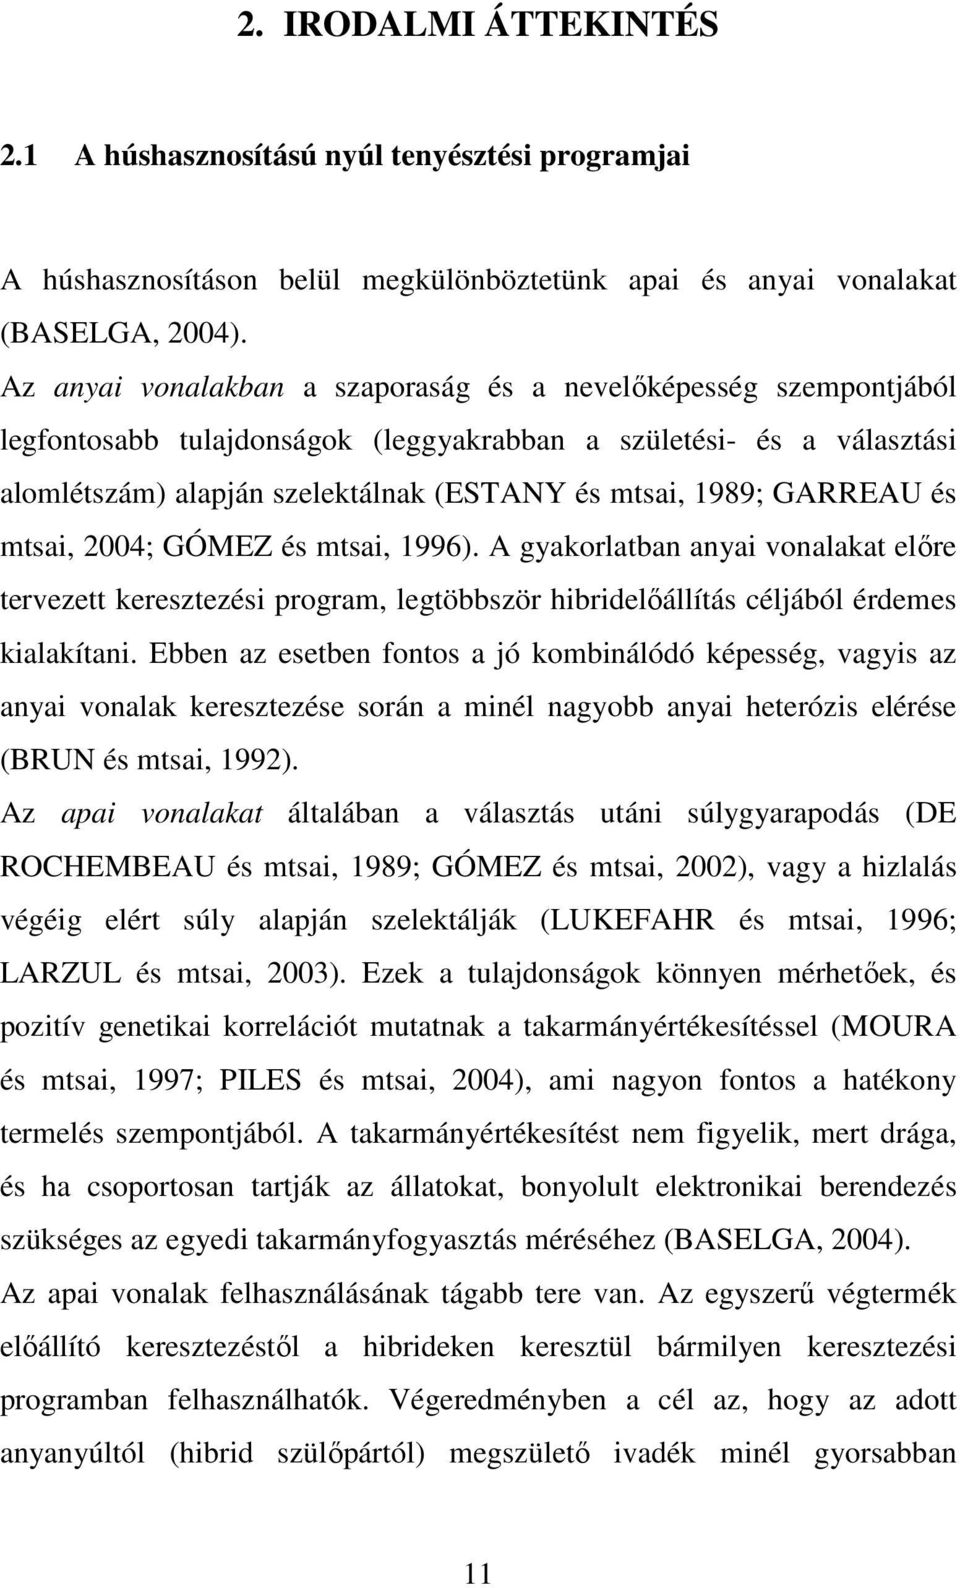 GARREAU és mtsai, 2004; GÓMEZ és mtsai, 1996). A gyakorlatban anyai vonalakat elıre tervezett keresztezési program, legtöbbször hibridelıállítás céljából érdemes kialakítani.